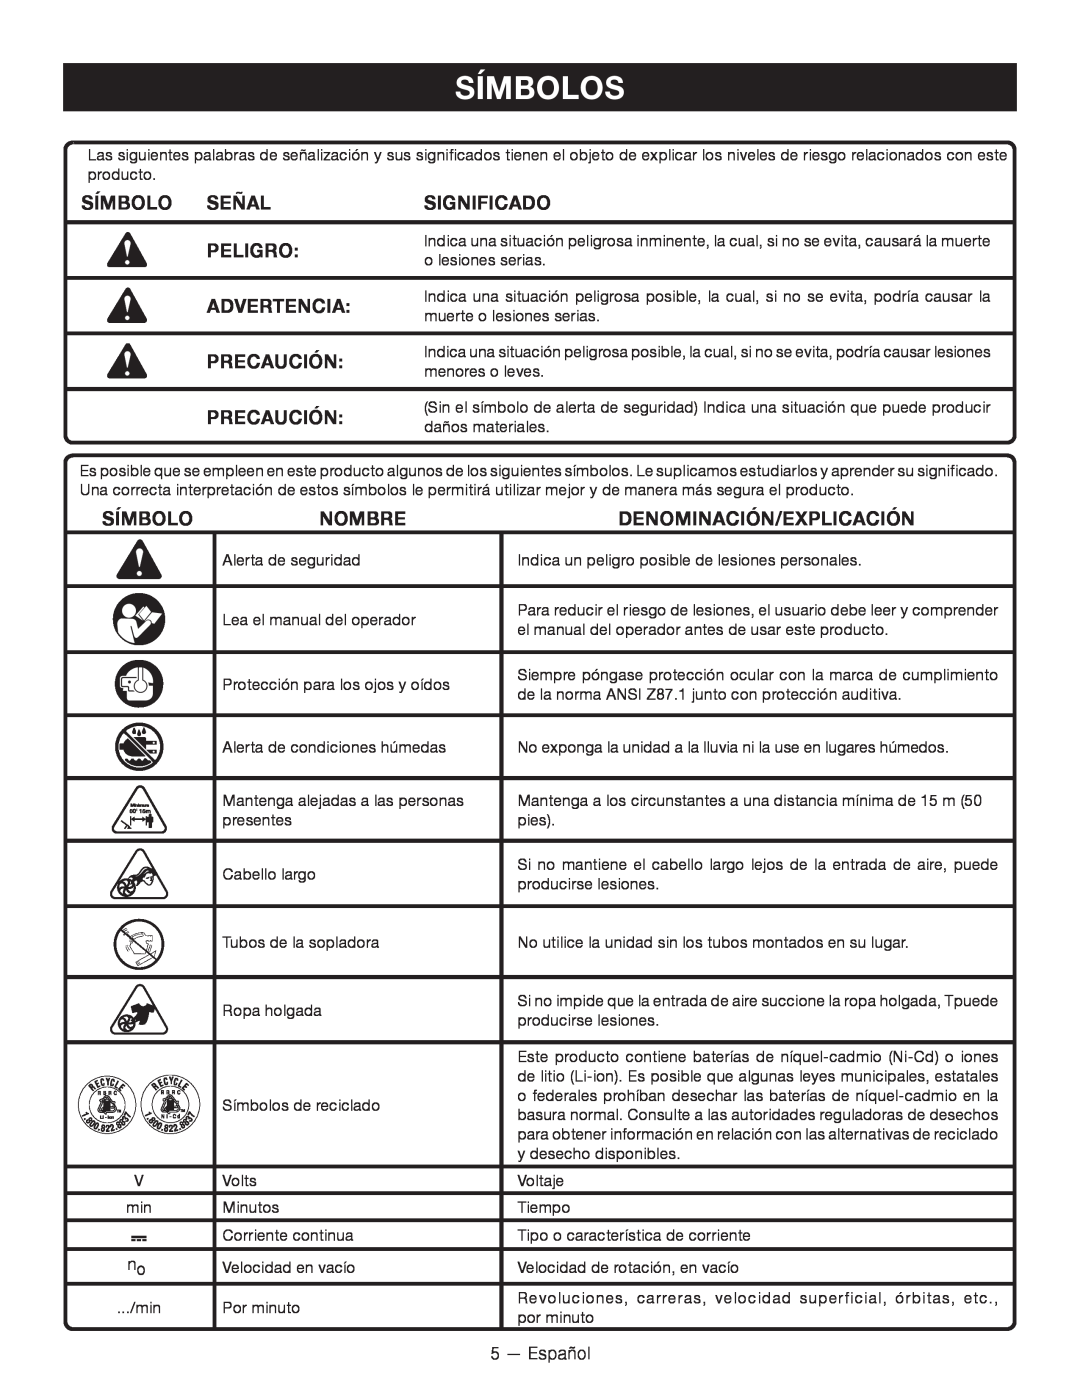 Ryobi P2102 Símbolos, Símbolo Señal, Significado, Peligro, Advertencia, Precaución, Nombre, Denominación/Explicación 